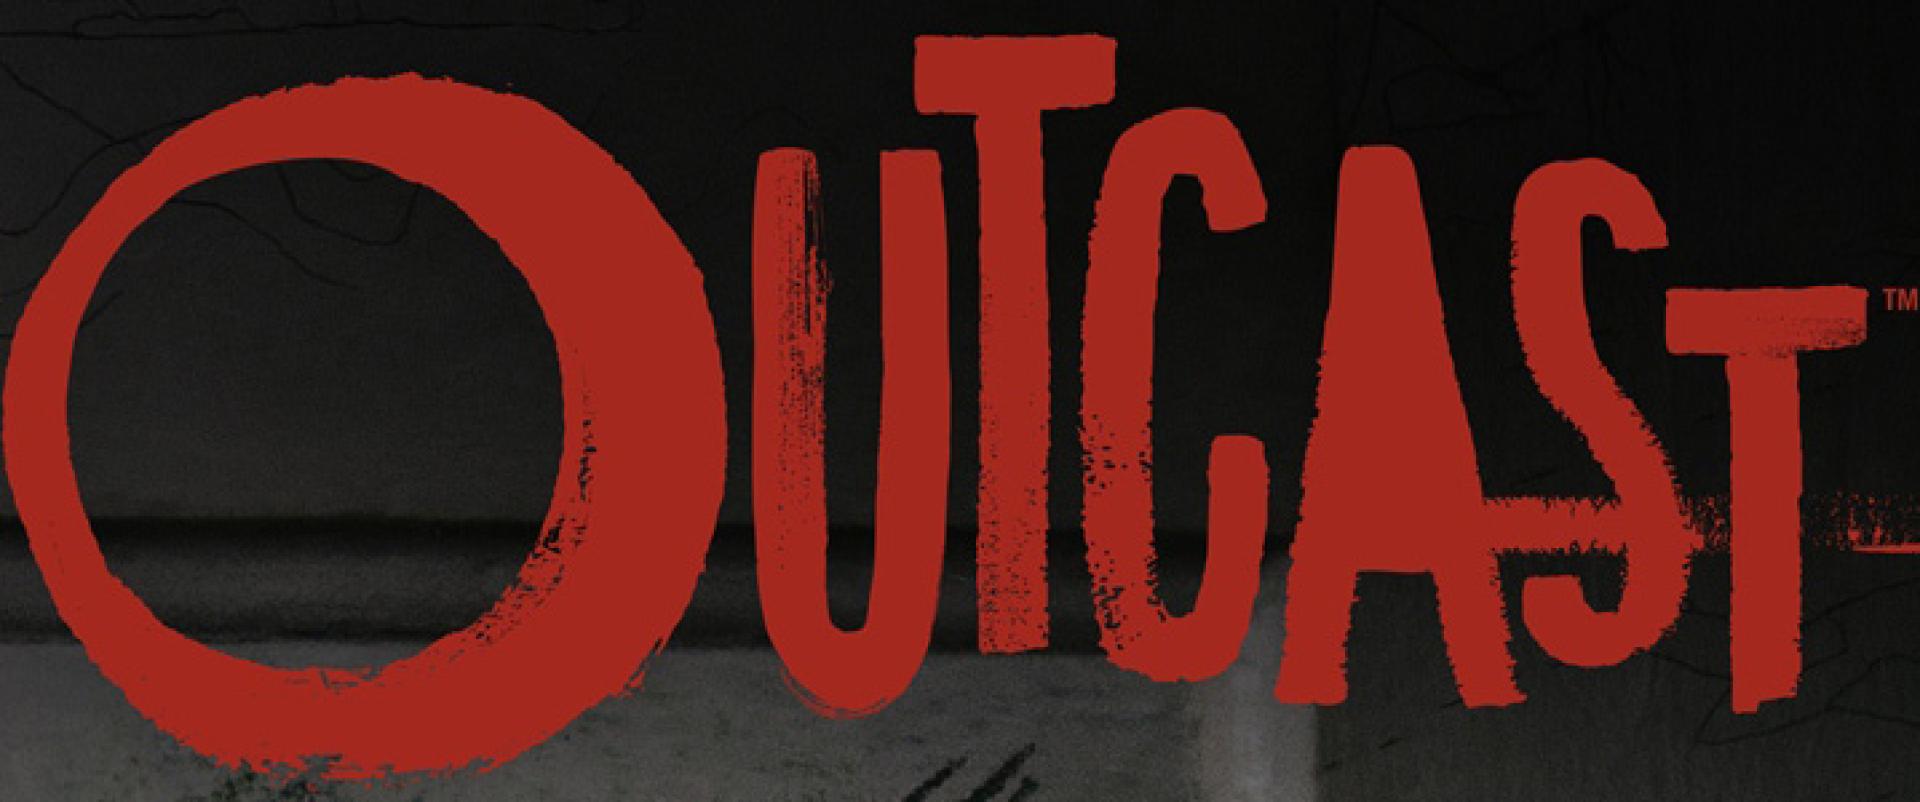 Outcast 1x02